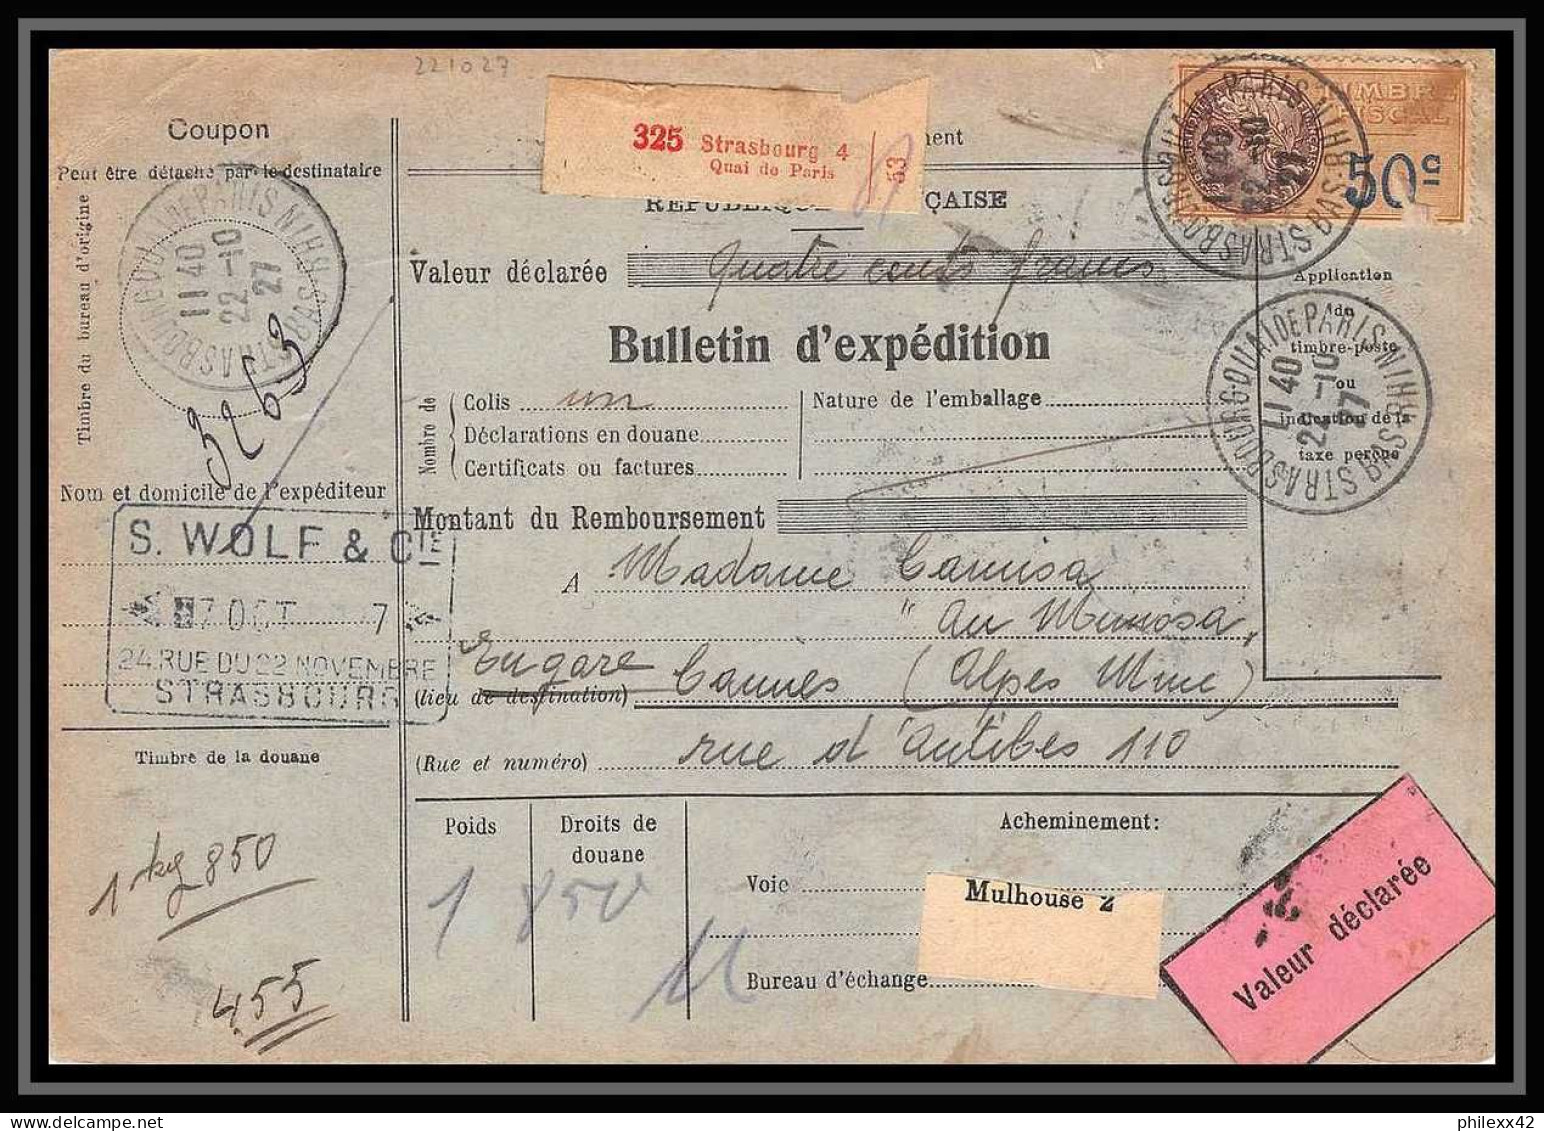 25228/ Bulletin D'expédition France Colis Postaux Fiscal Strasbourg 4 Pour Cannes 1927 Merson N°245 Valeur Déclarée - Covers & Documents